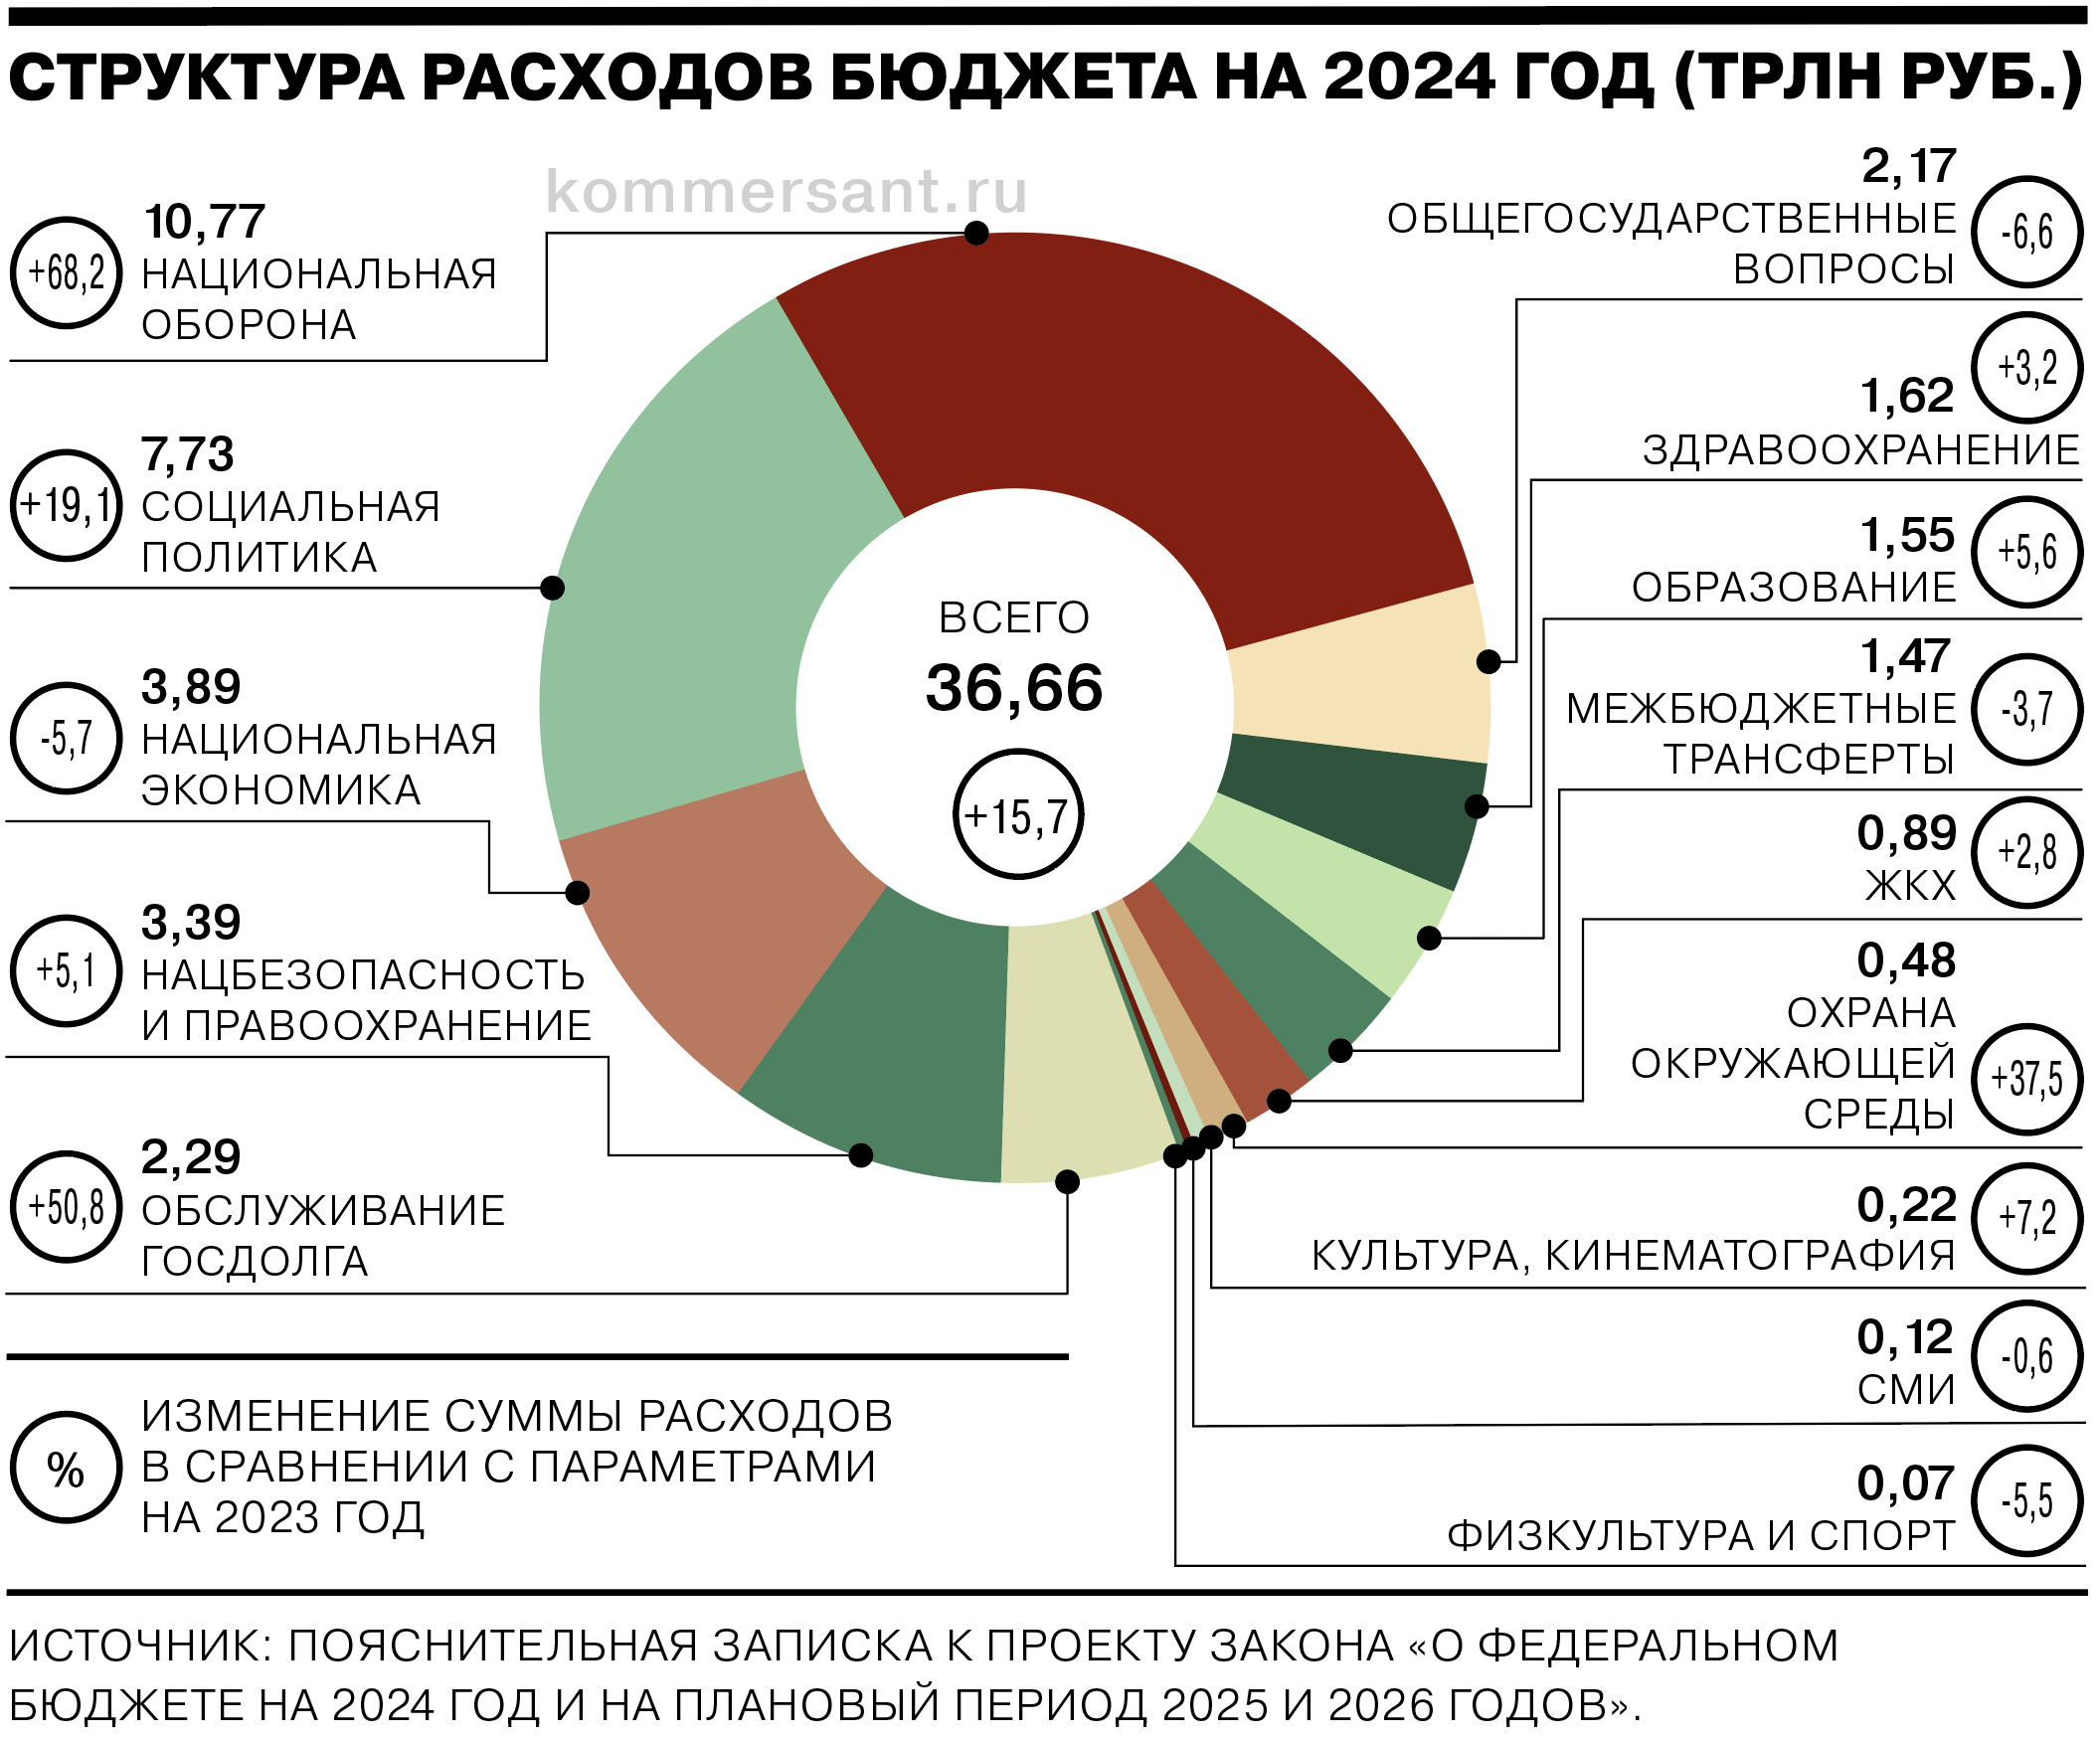 Утвержден бюджет на 2024 год. Структура расходов бюджета на 2024 год. Бюджет России на 2024. Структура бюджета РФ на 2024 год. Бюджет РФ на 2024.